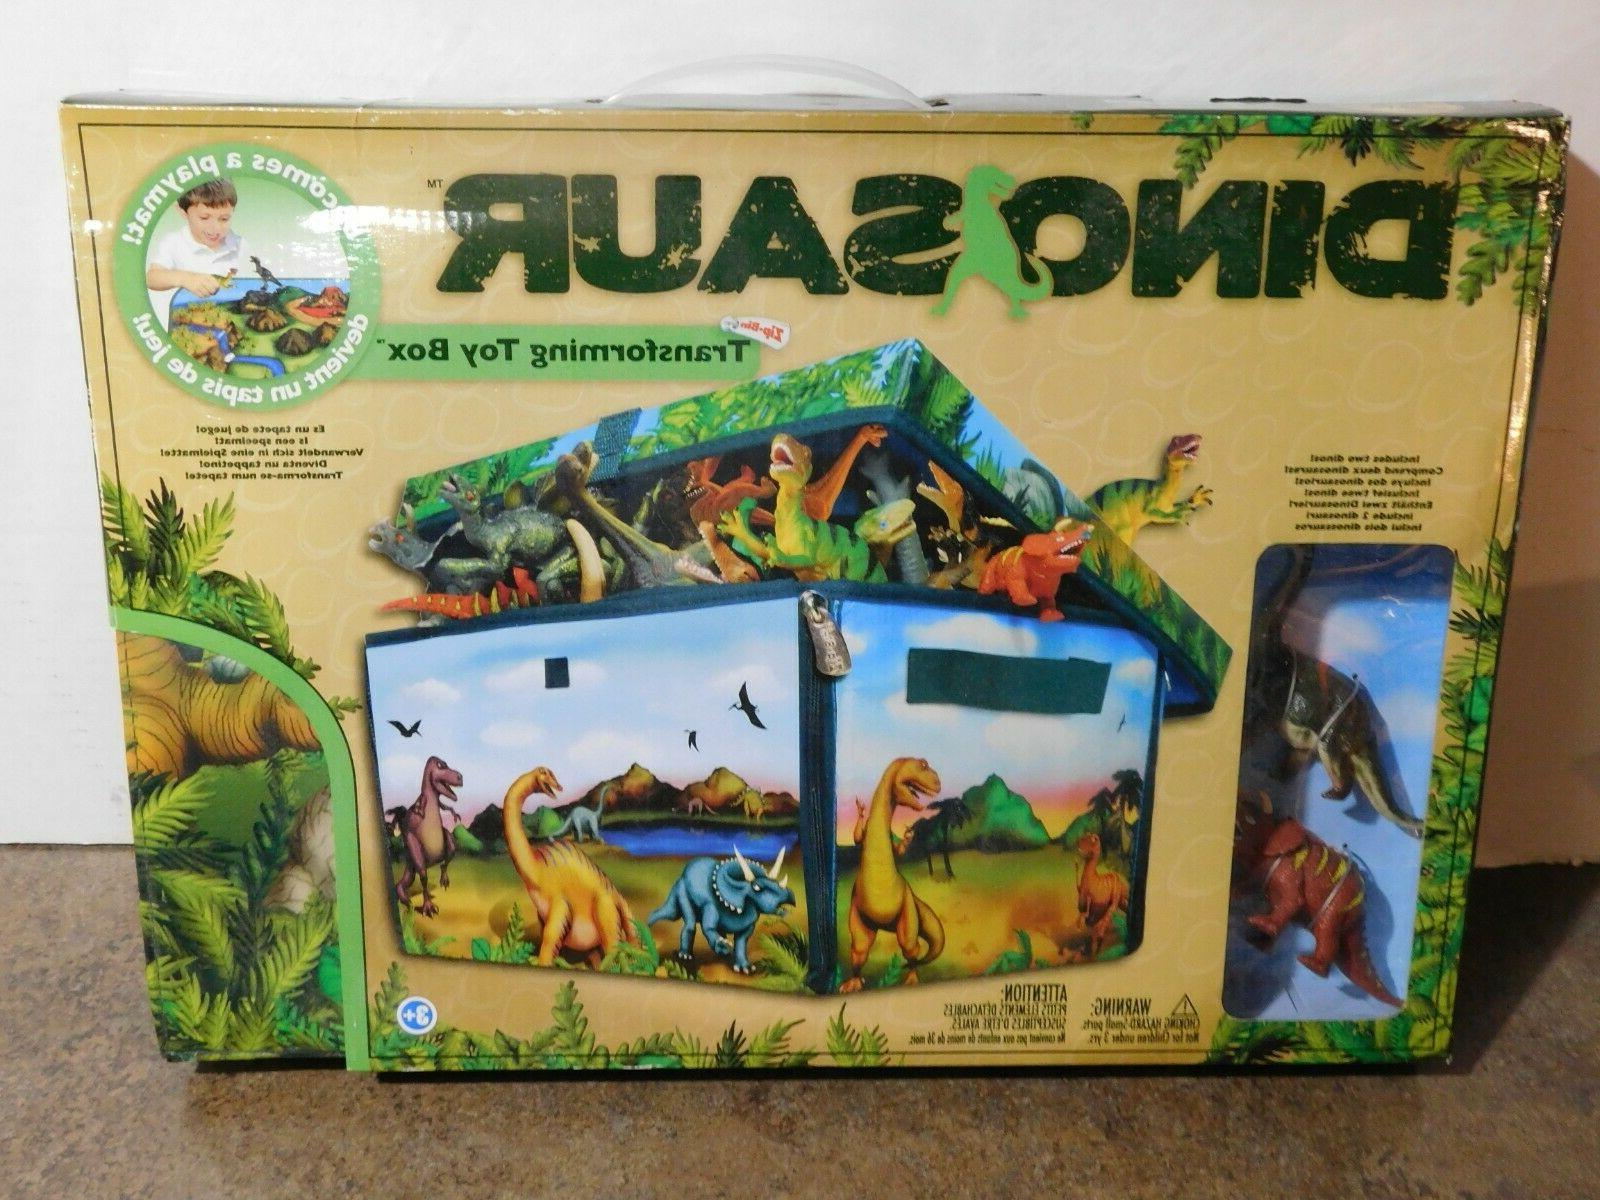 Dinosaur Toy Box Play Set Convertible Imaginative Play